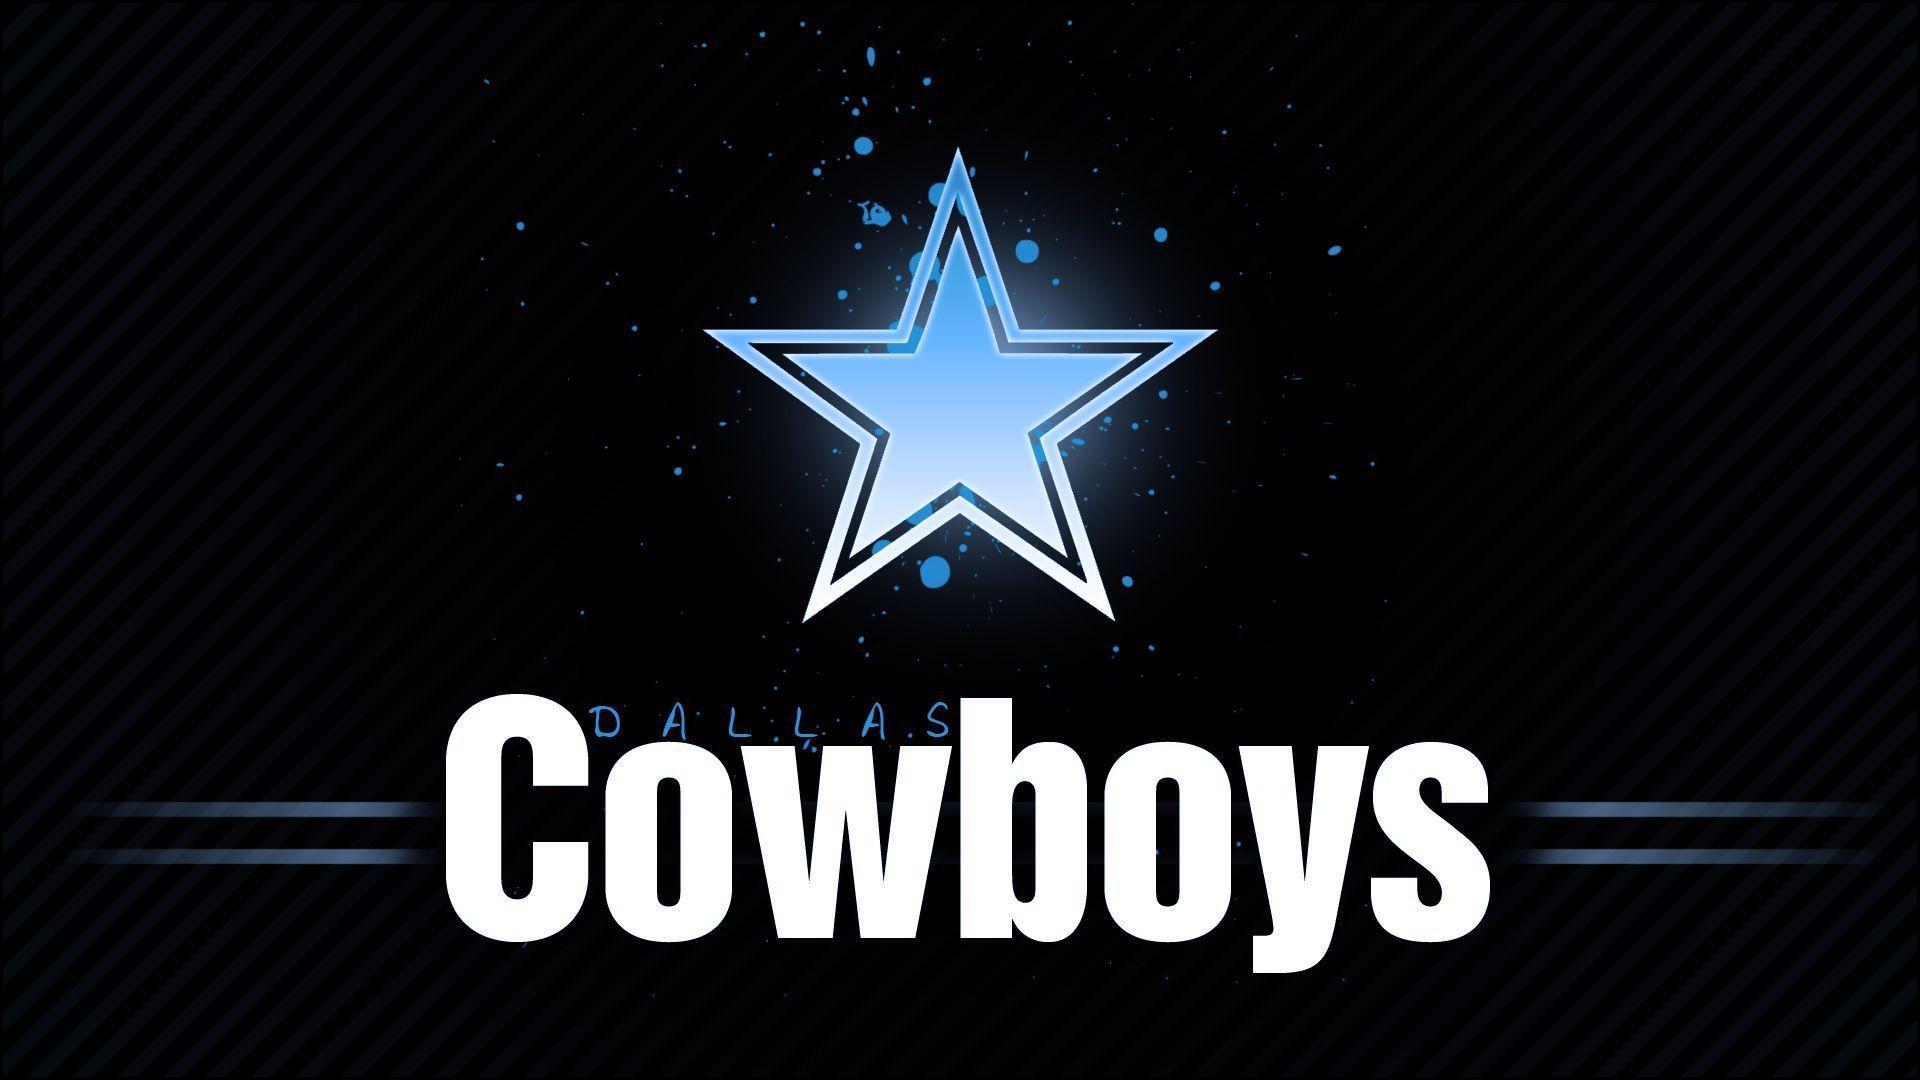 Sports dallas cowboys wallpaper px free download